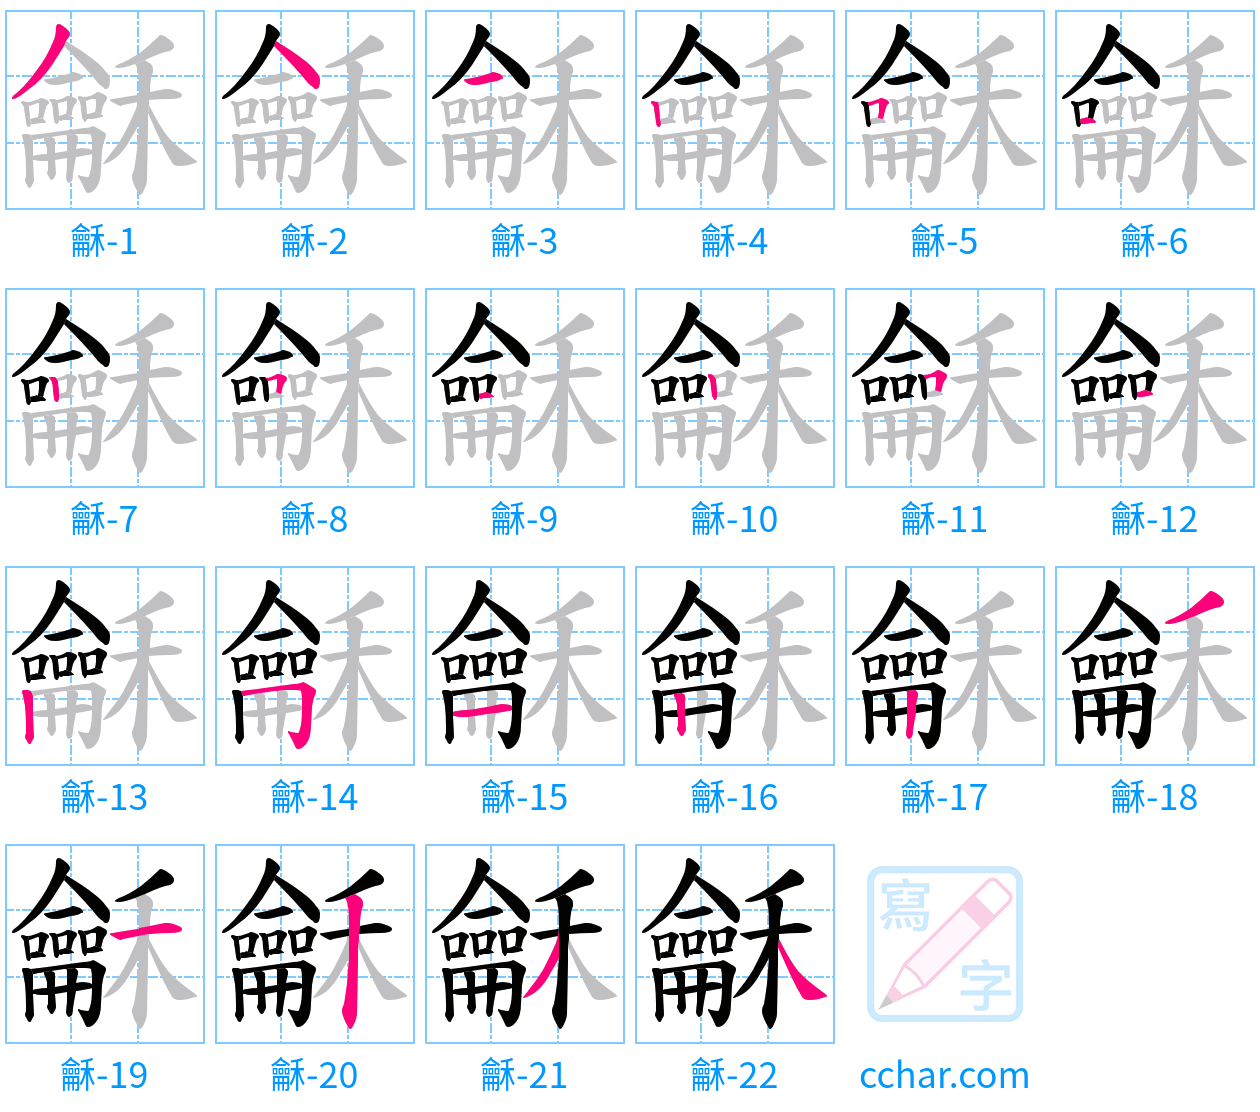 龢 stroke order step-by-step diagram